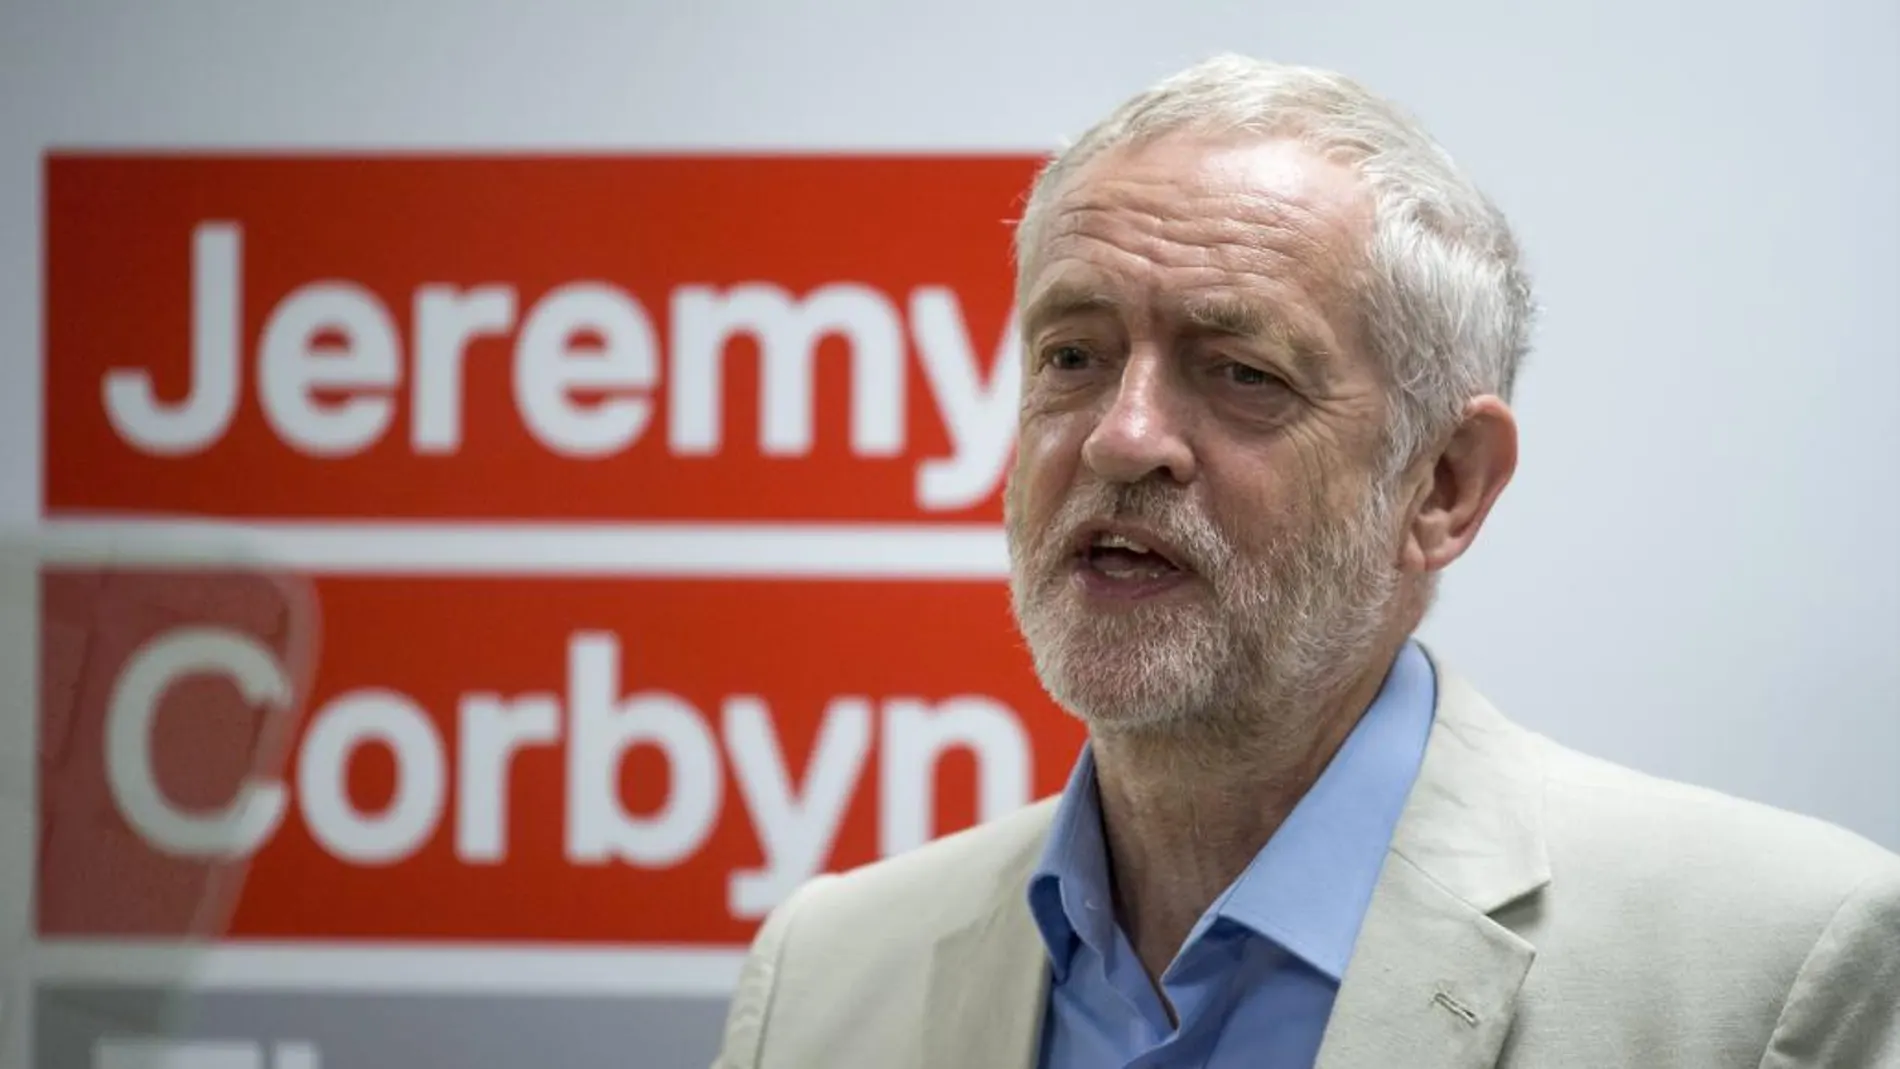 El líder del Partido Laborista británico, Jeremy Corbyn, asiste al lanzamiento de su campaña de reelección.